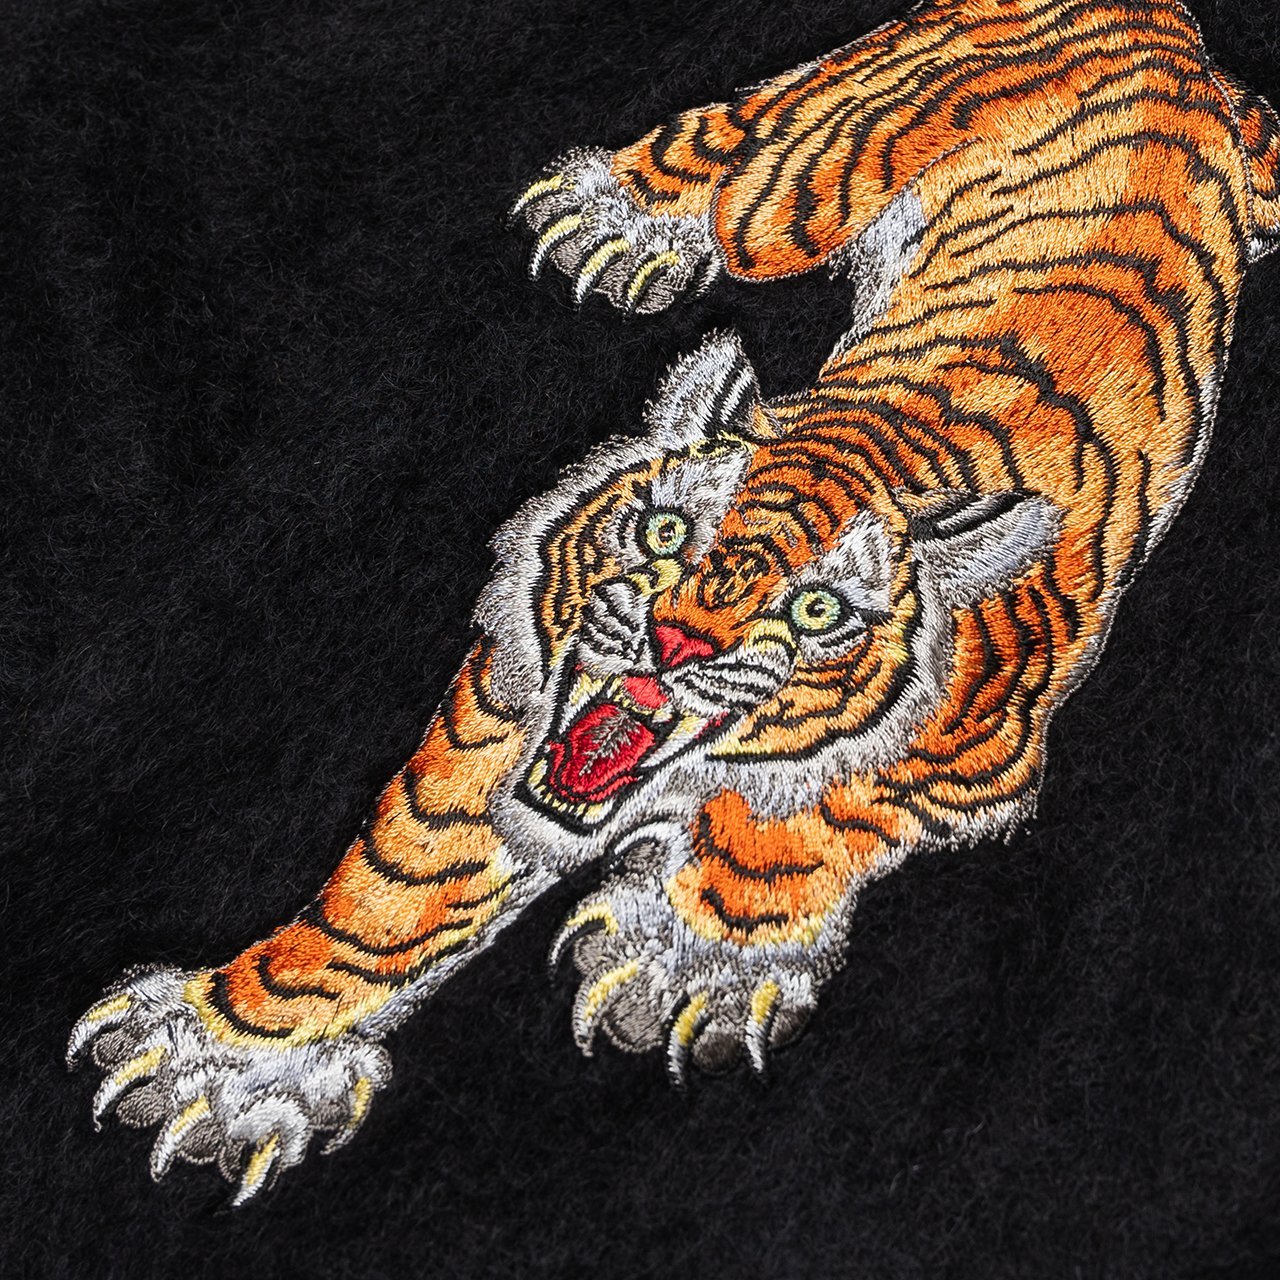 有名な高級ブランド TIM LEHI ドラゴン 龍 刺繍 ワコマリア WACKO